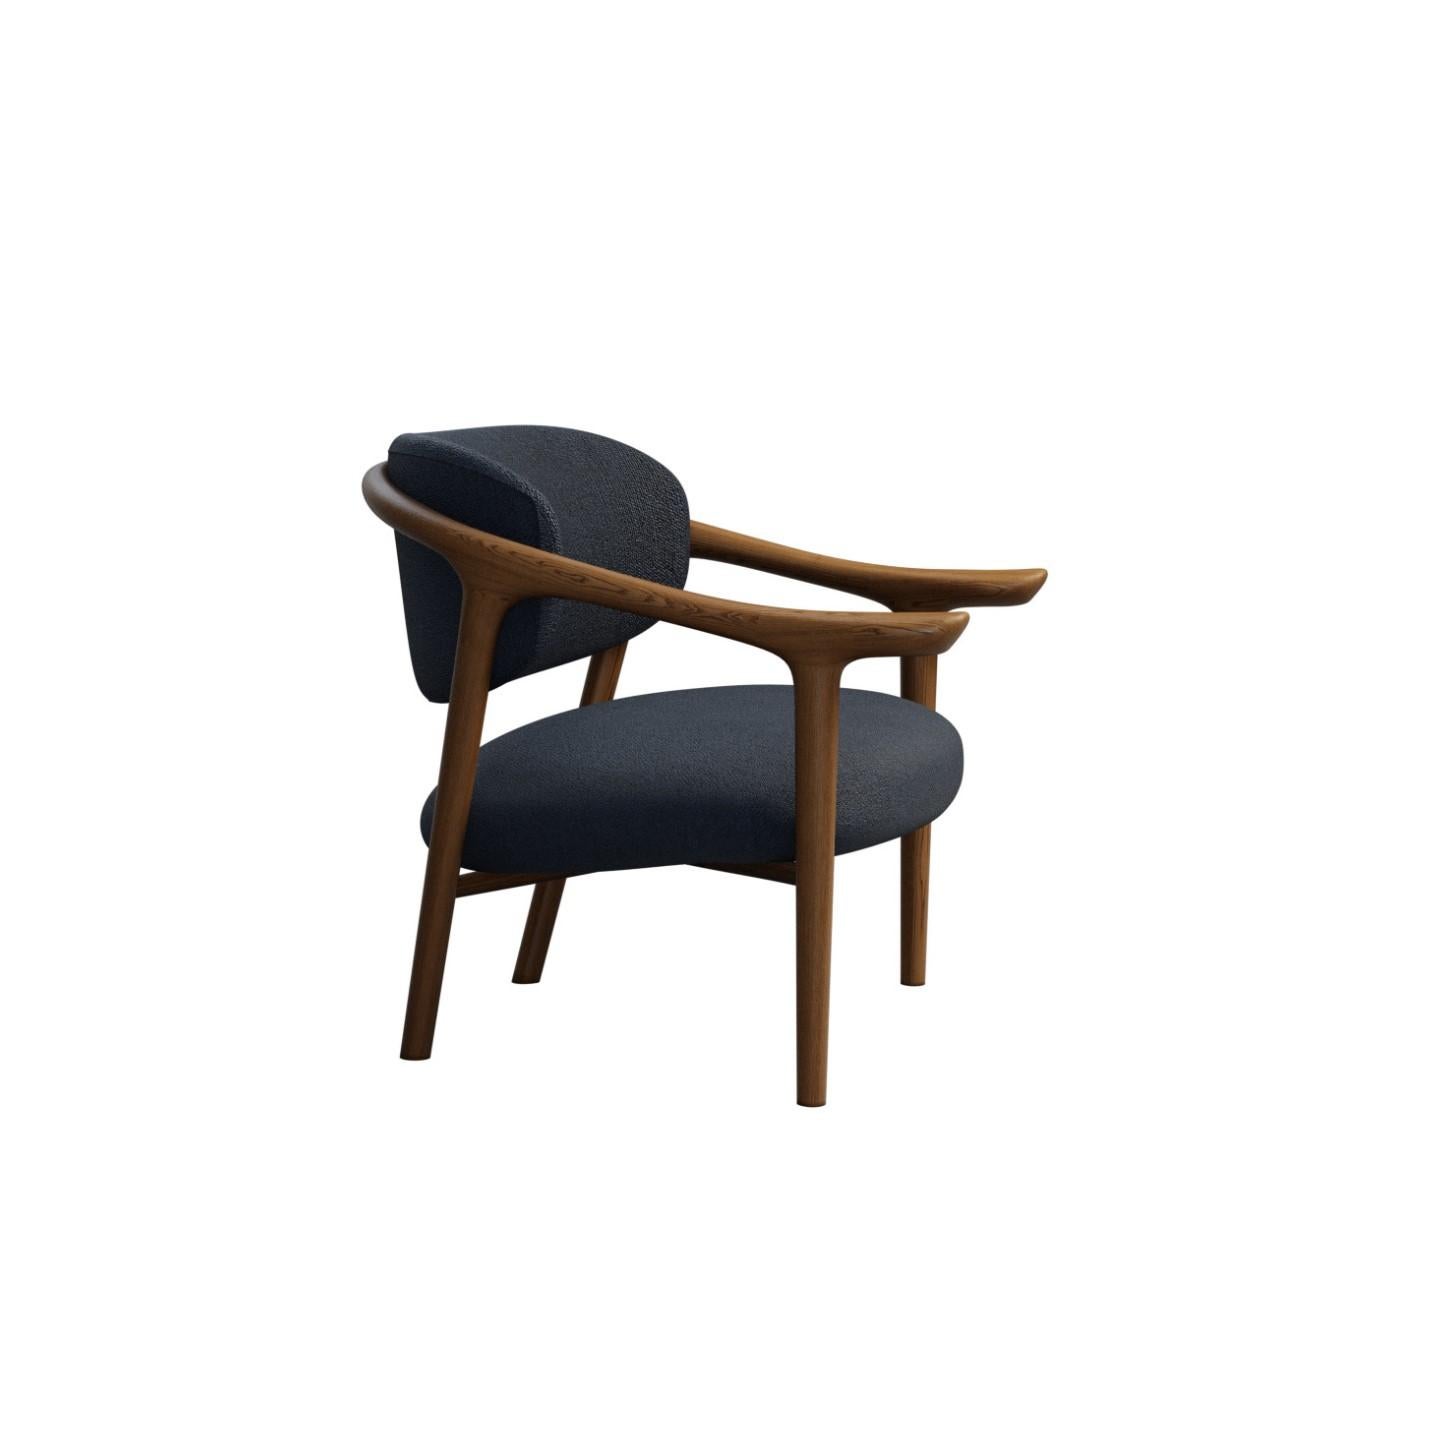 Aida est un fauteuil en bois de frêne courbé avec assise et dossier rembourrés au design iconique.
Grâce à son élégance et à son confort, ce fauteuil gracieux, sinueux et polyvalent s'adapte à différents environnements :
domestique ou contractuel,